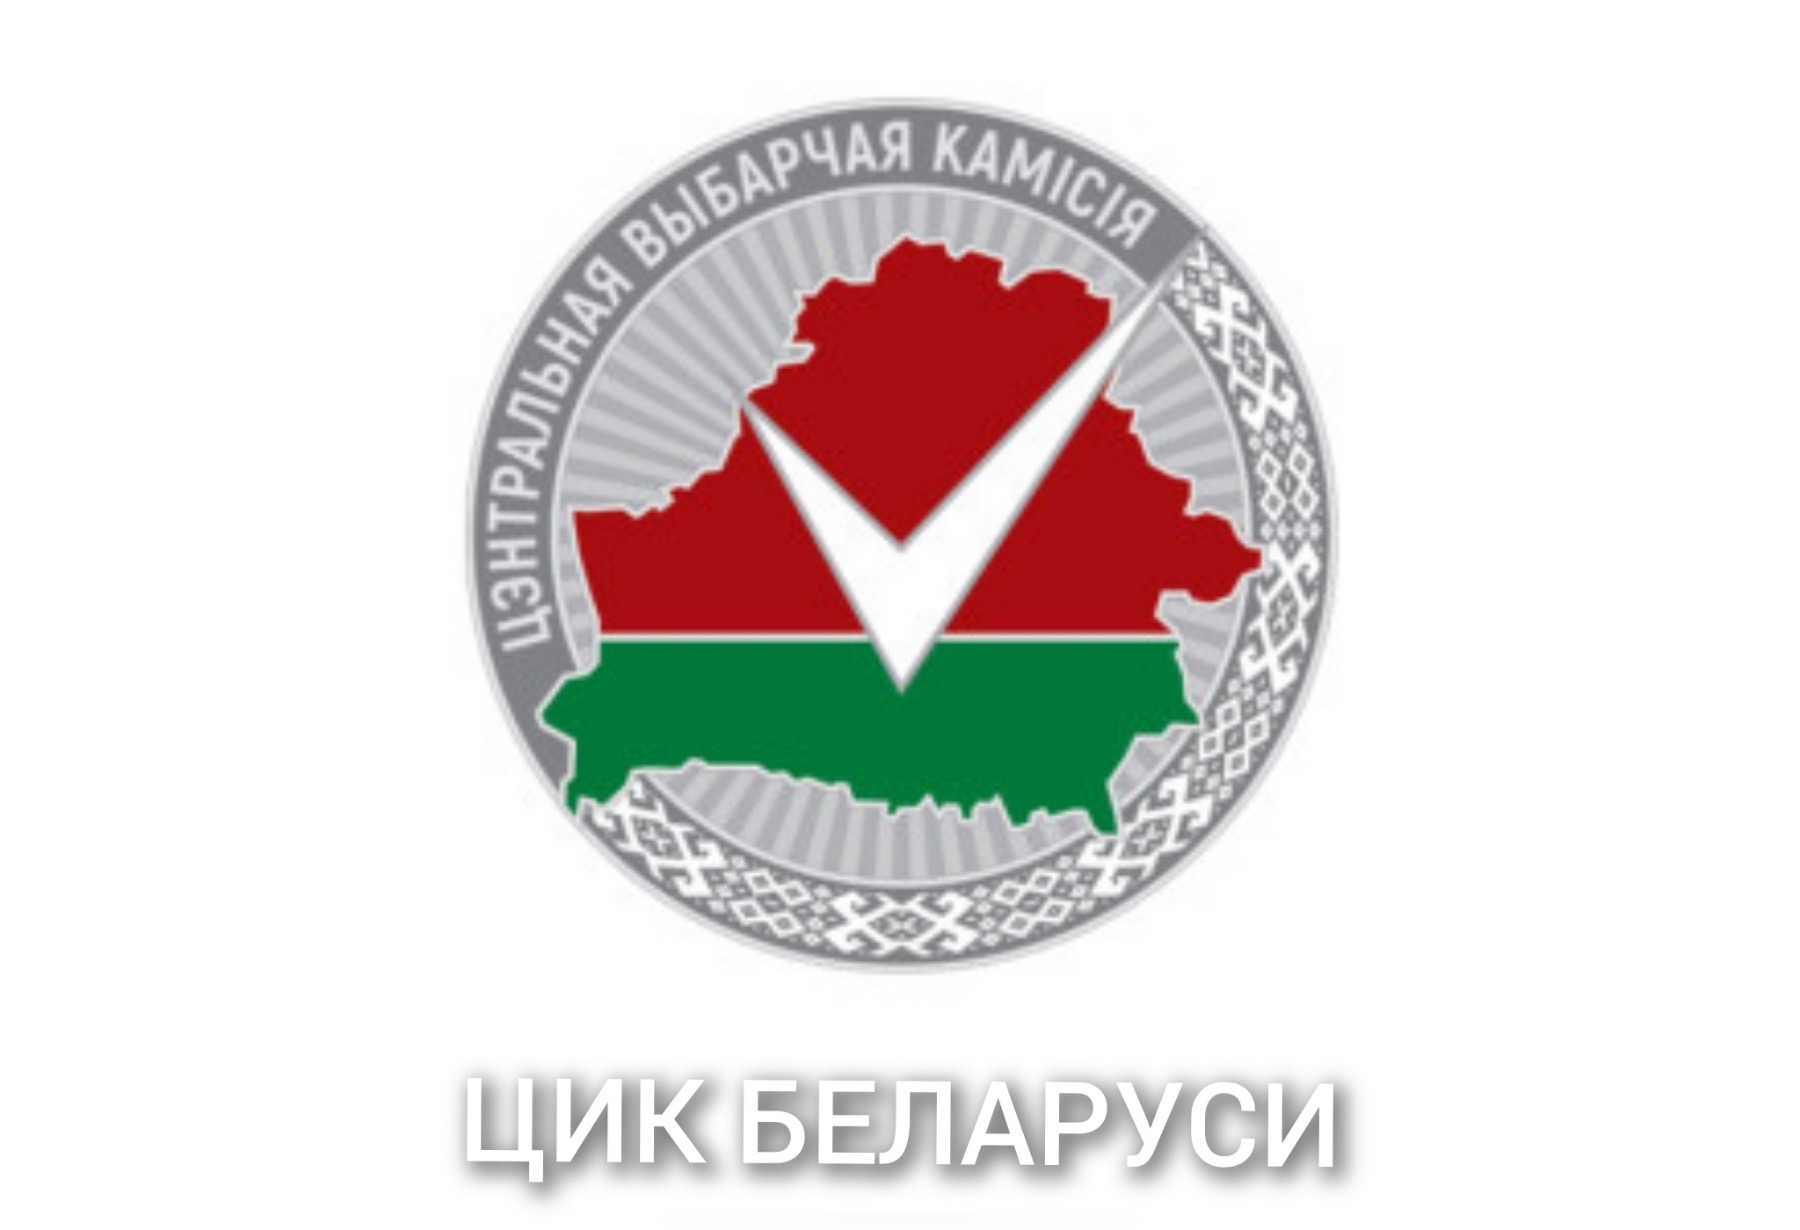 Сайт рб рф. ЦИК Беларуси. Центральная избирательная комиссия эмблема с флагом. Центральная избирательная комиссия логотип вектор. Орнамент белорусского флага.